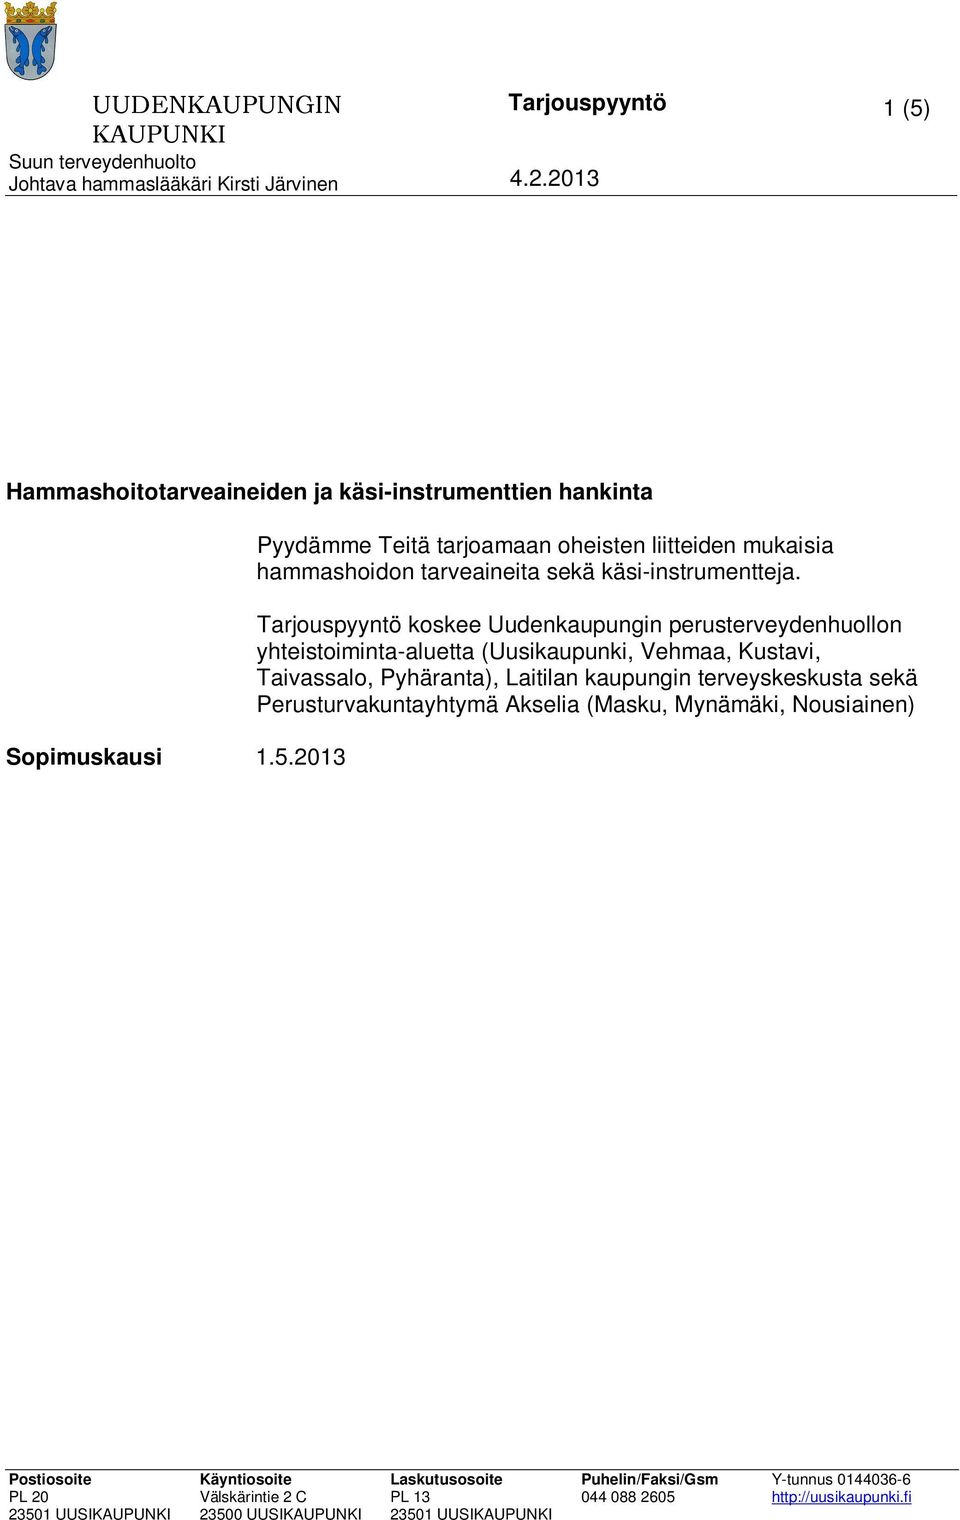 Akselia (Masku, Mynämäki, Nousiainen) Sopimuskausi 1.5.2013 30.4.2015 + 1 vuoden optio. Optiolla tarkoitetaan mahdollisuutta jatkaa sopimusta alkuperäisin ehdoin.